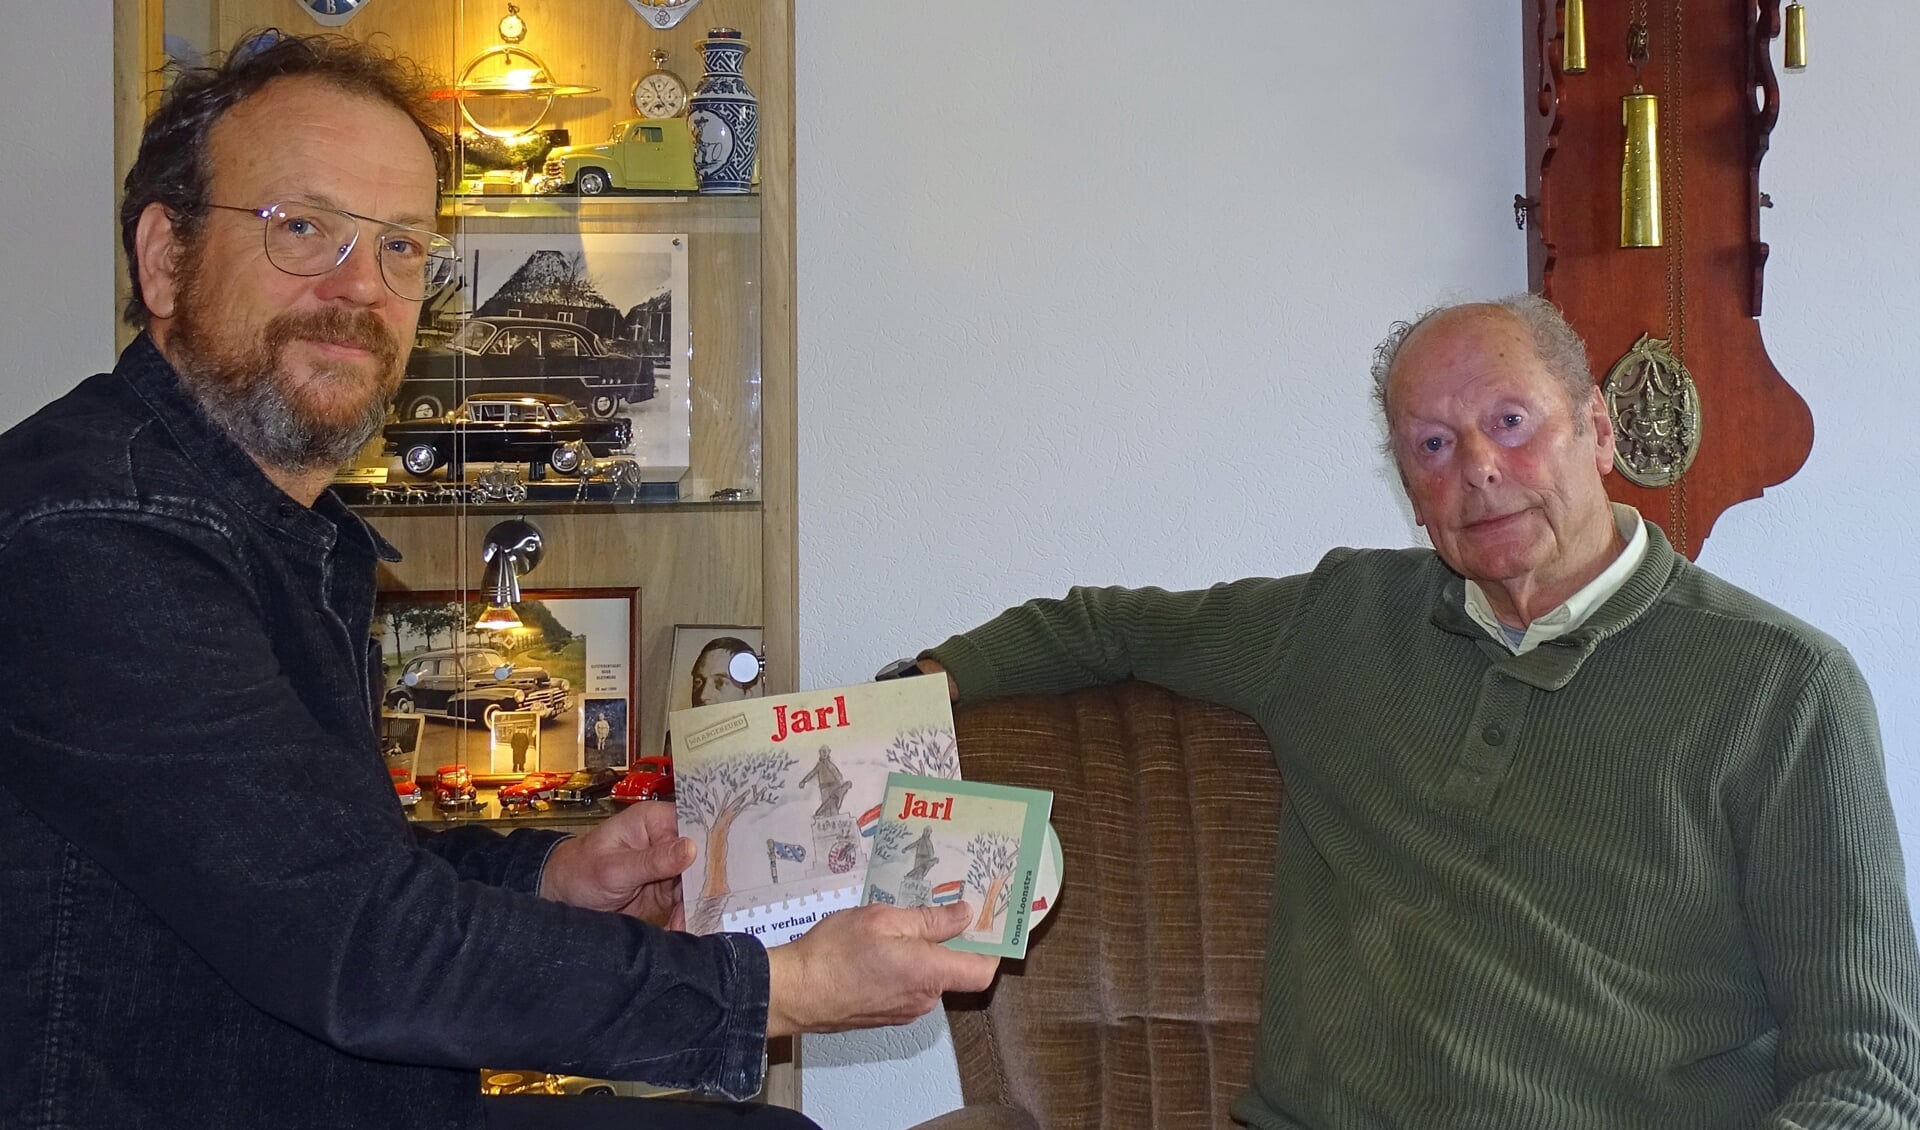 Onno Loonstra gaf het eerste exemplaar van zijn nieuwe cd en het vernieuwde boek aan de 85-jarige Lubbert Visser uit Dokkum, één van de hoofdrolspelers uit het boek Jarl. Zijn verhaal wordt nu ook bezongen in een lied.